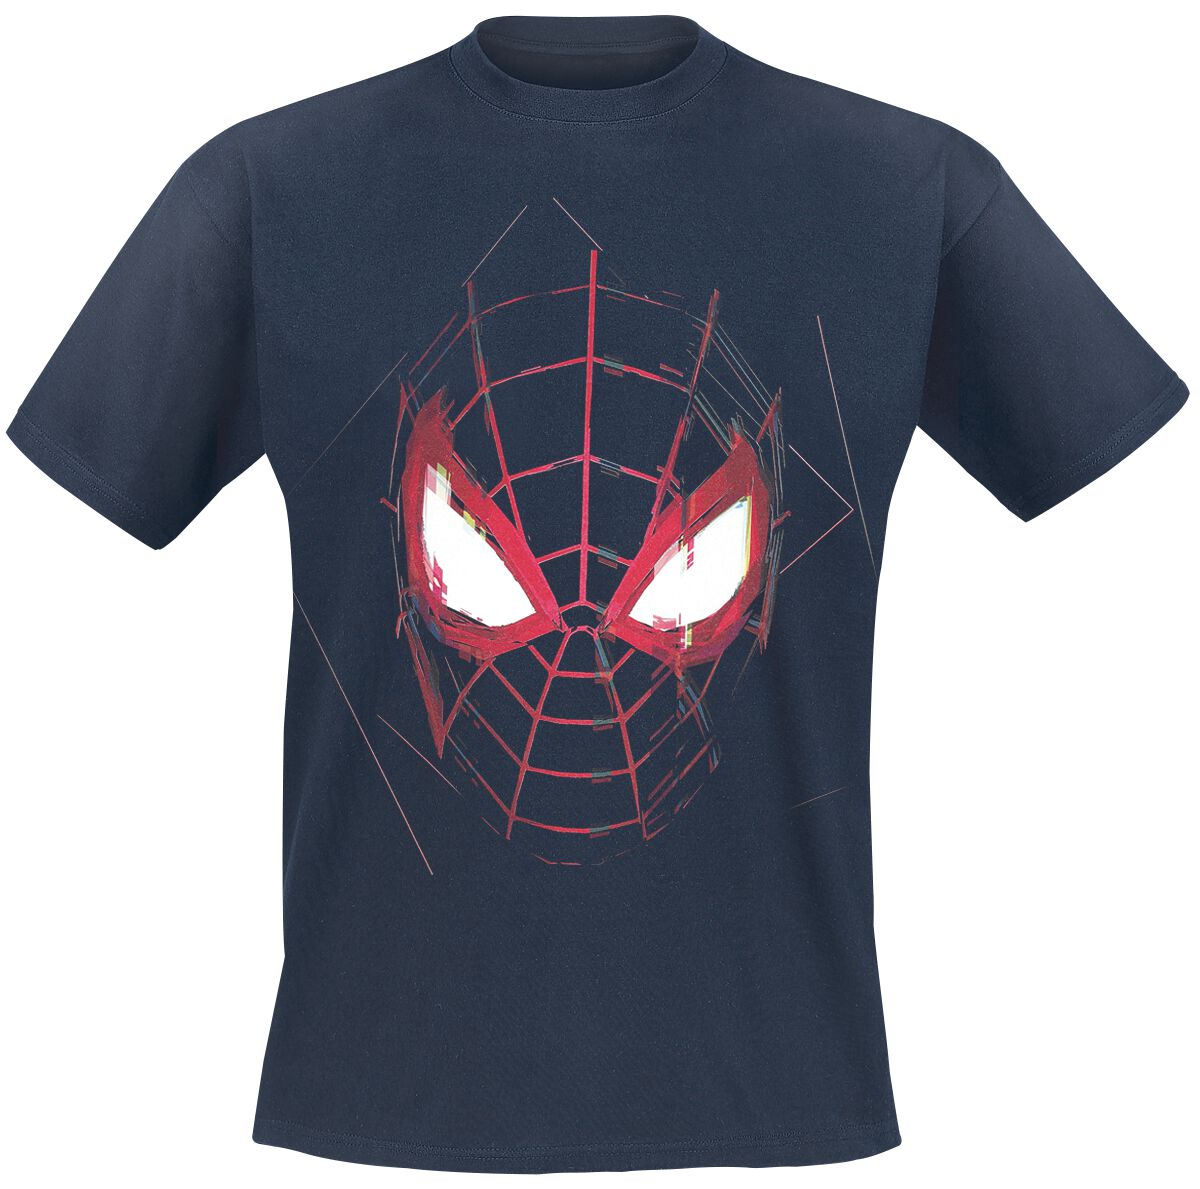 Spider-Man - Marvel T-Shirt - Miles Morales - Maske - S bis XXL - für Männer - Größe XXL - dunkelblau  - EMP exklusives Merchandise!